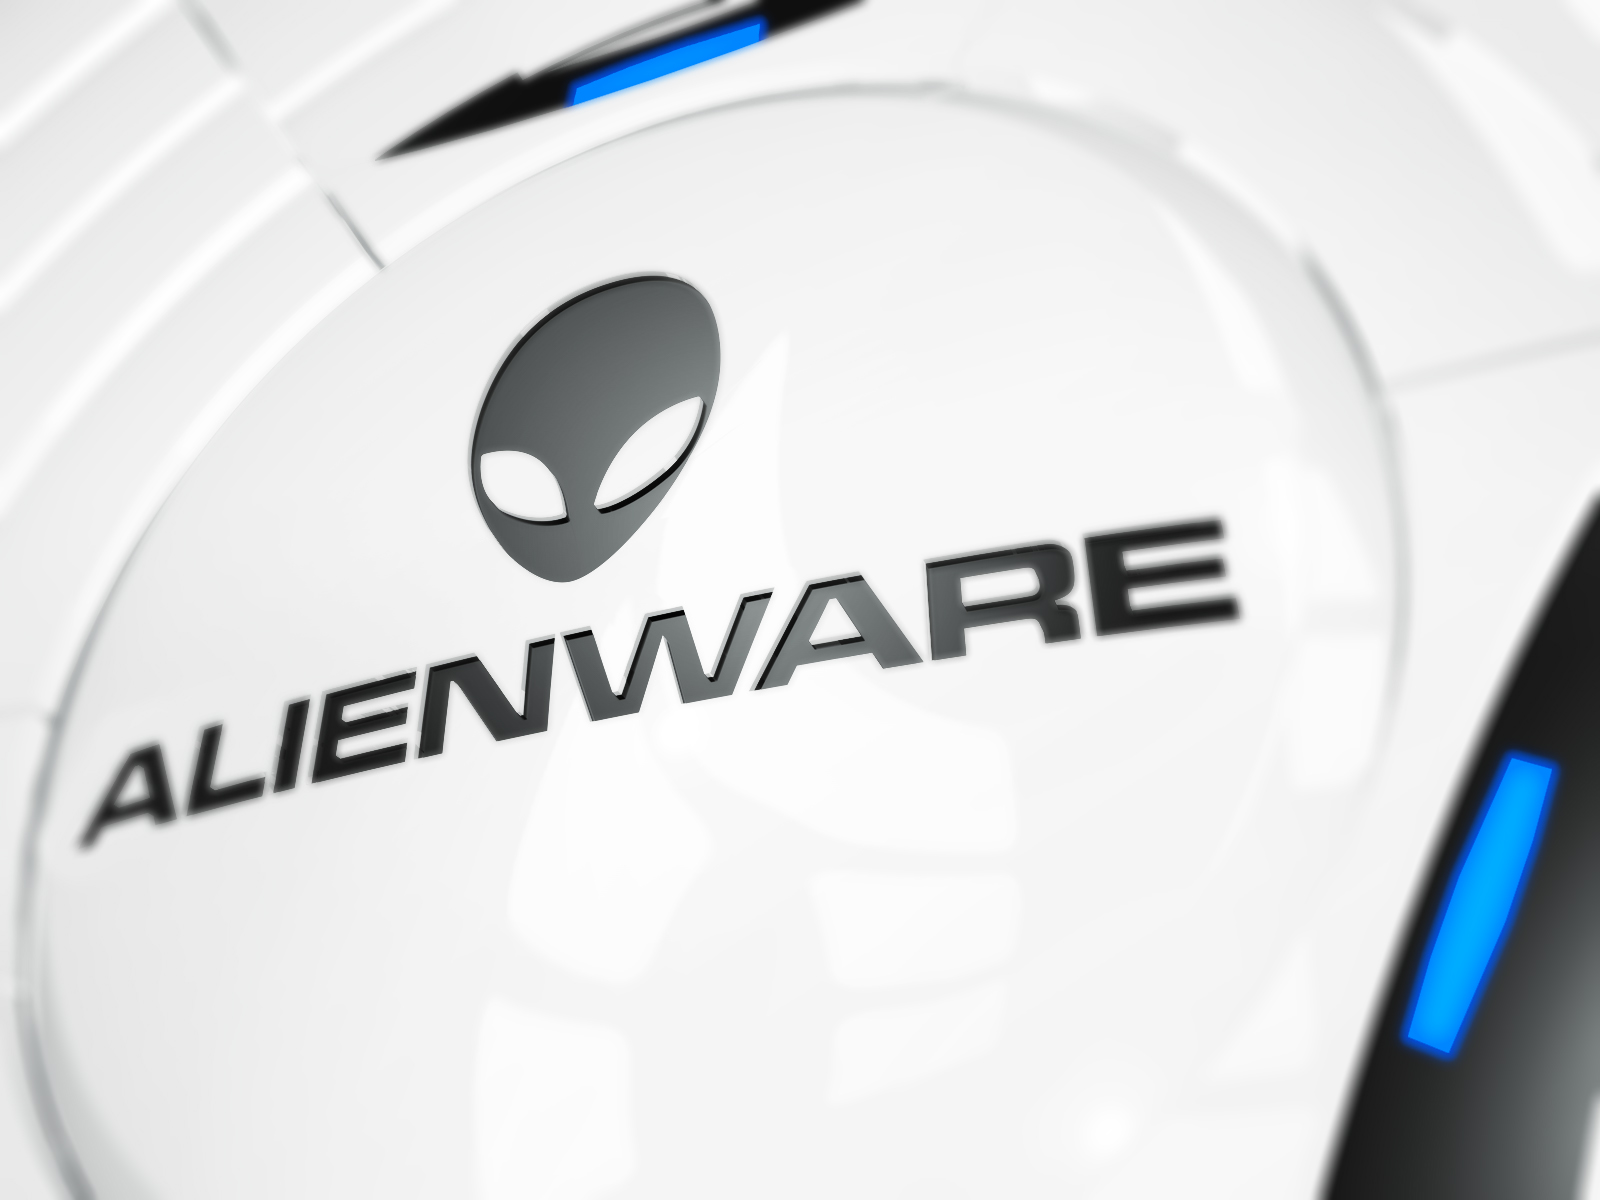 Alienware Wallpapers - Top Những Hình Ảnh Đẹp